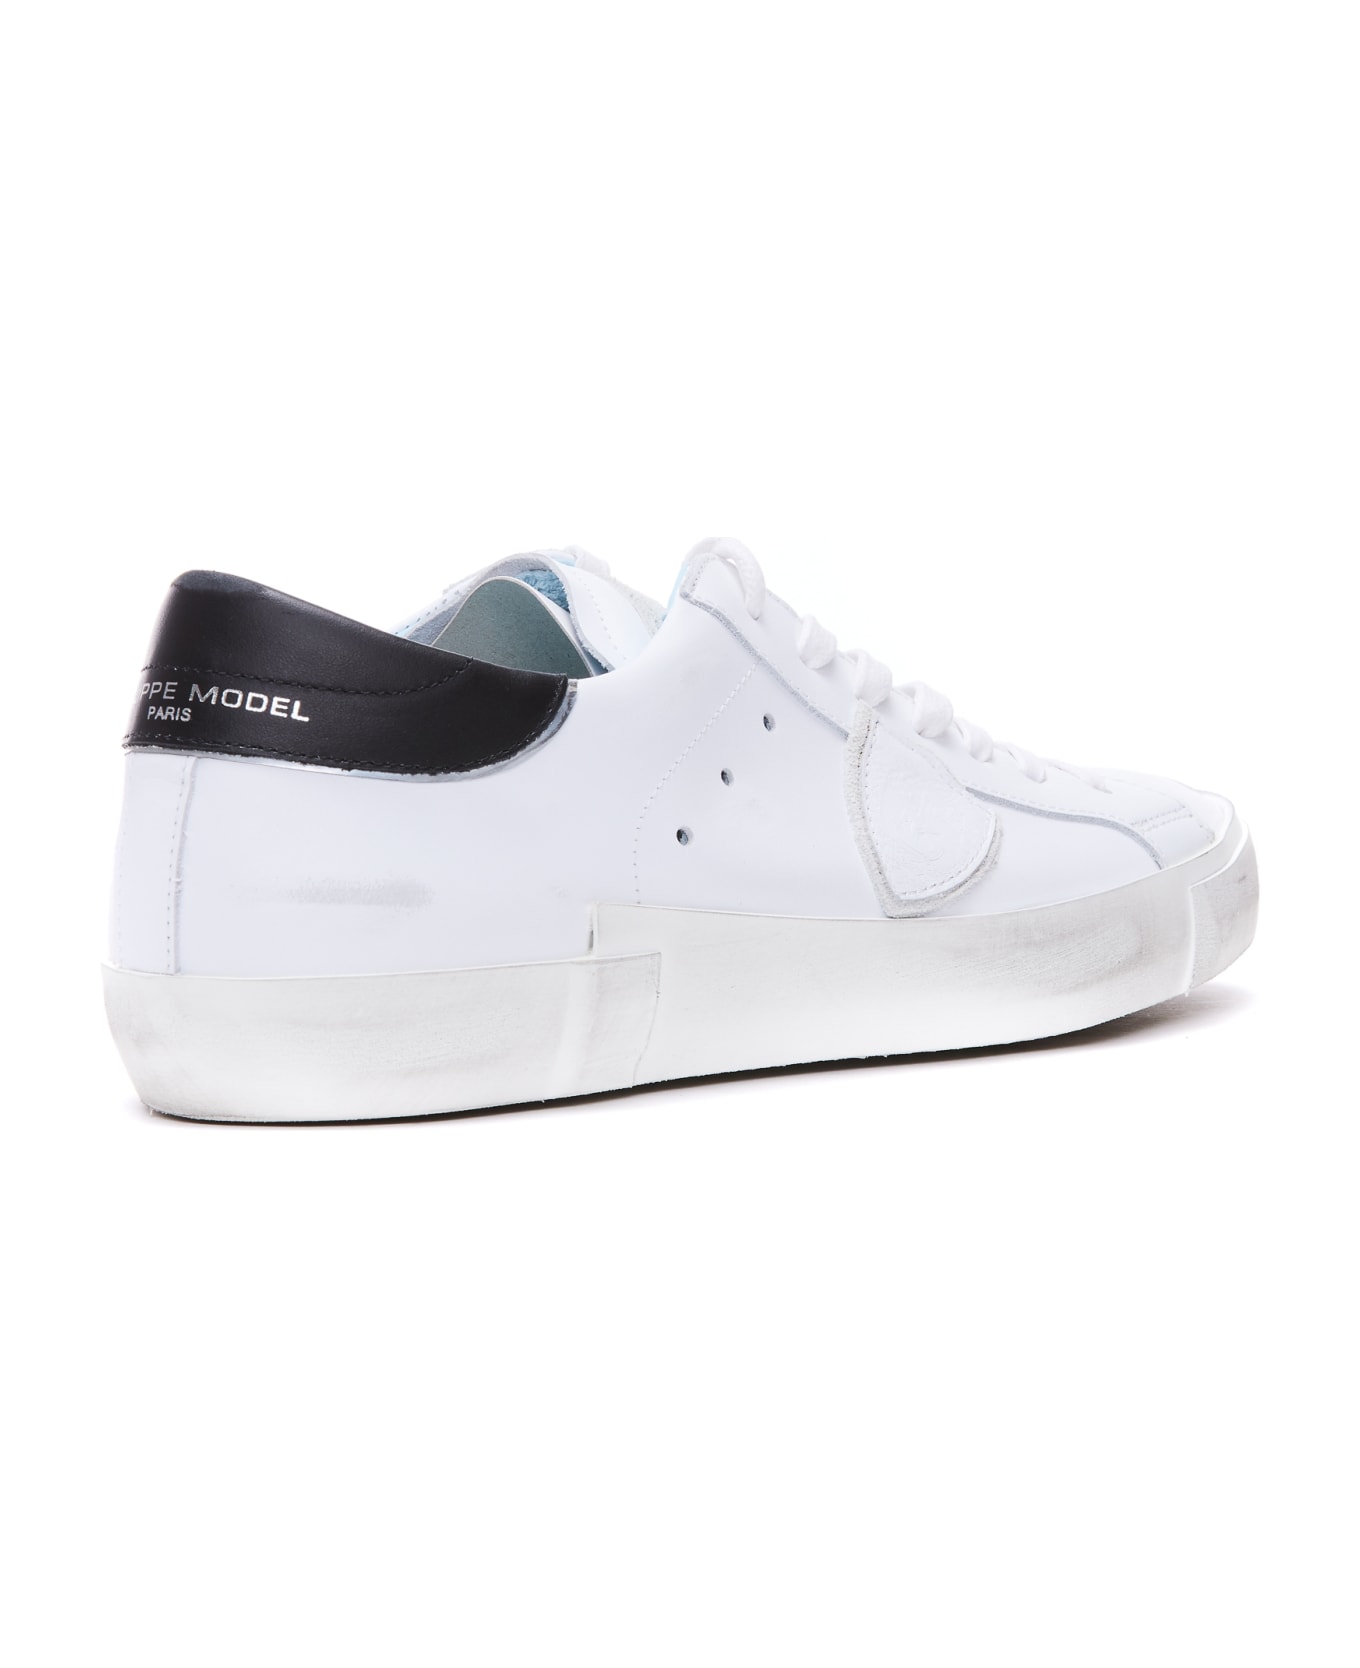 Philippe Model Prsx Sneakers - Bianco/nero